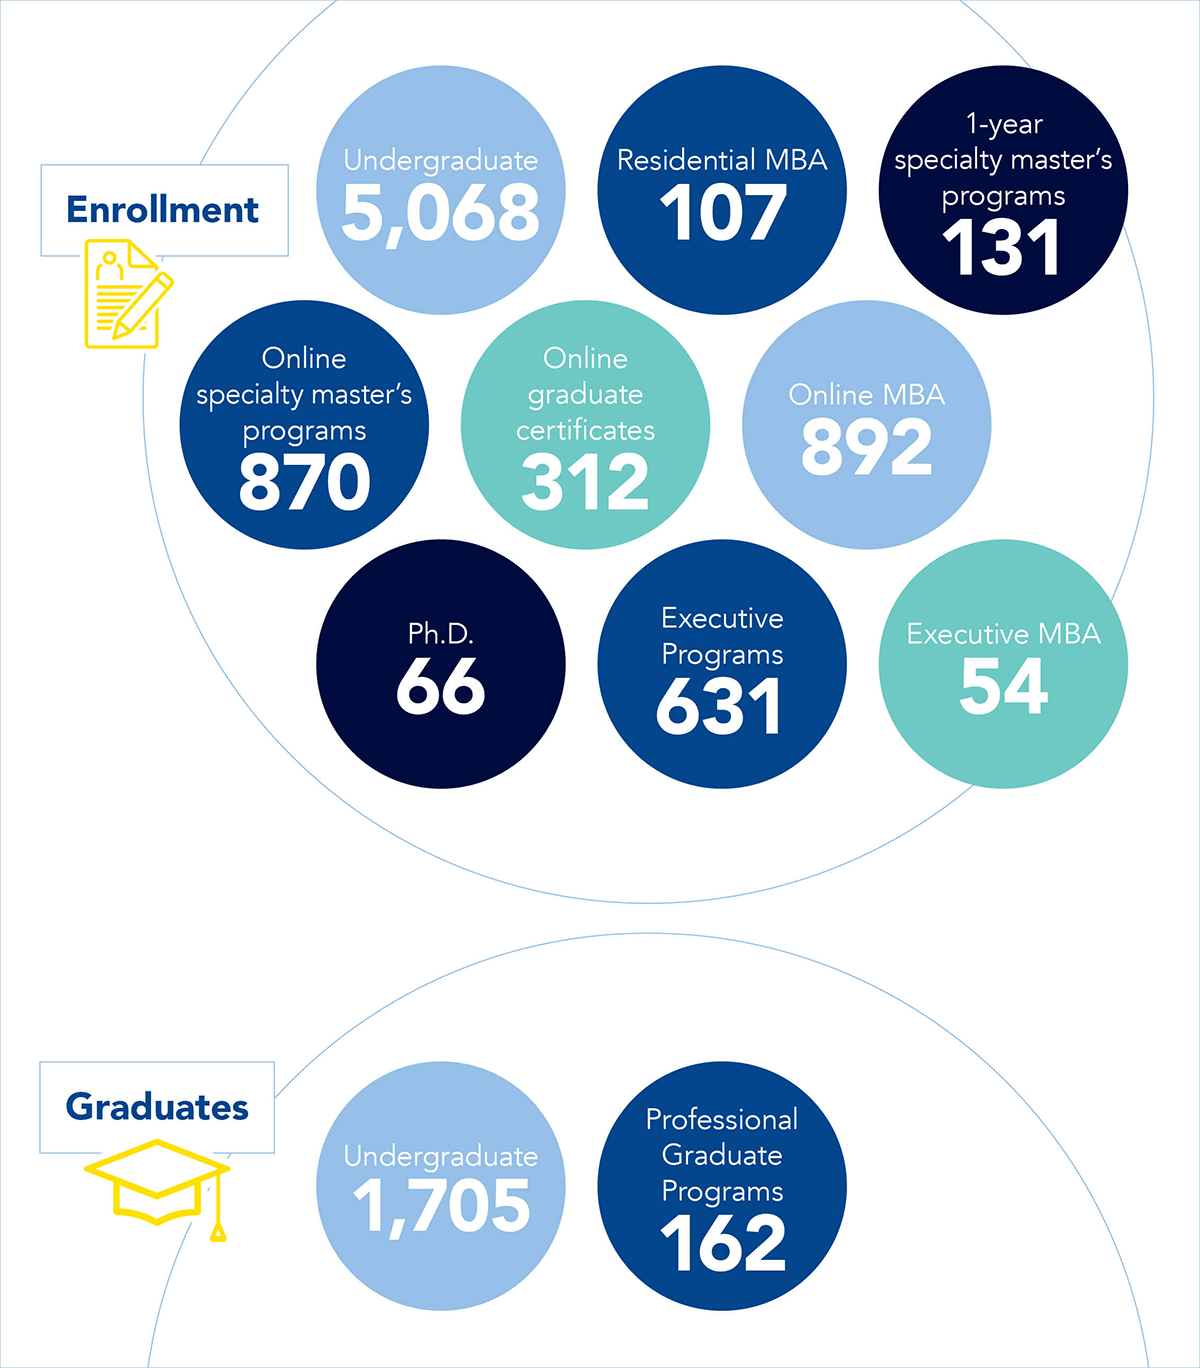 Enrollment and Graduates